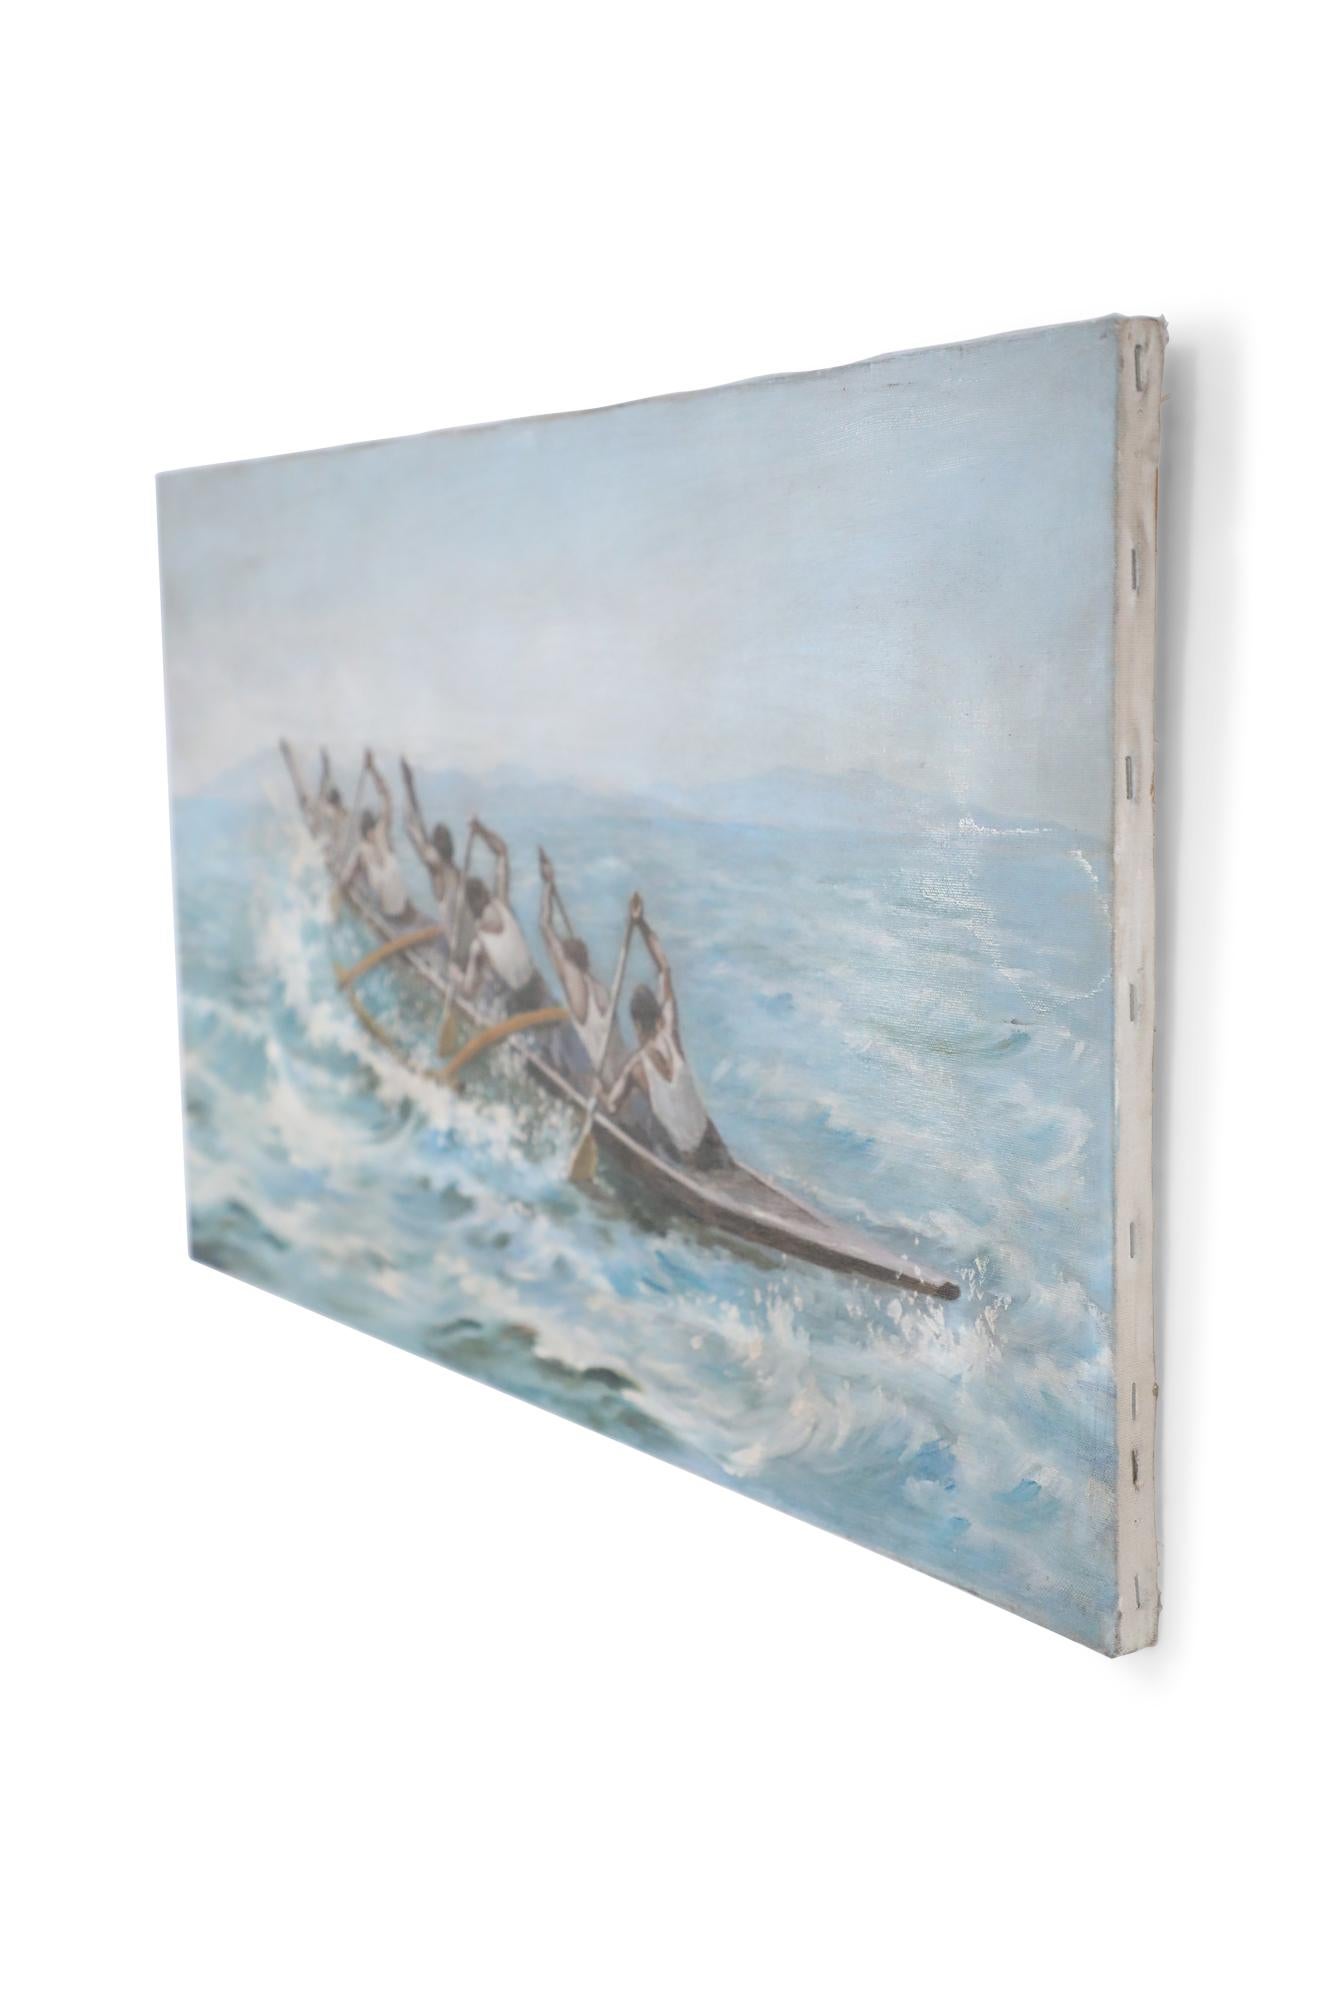 Peinture à l'huile d'époque (20ème siècle) d'un équipage de six personnes ramant en mer dans un bateau sur une toile rectangulaire, non encadrée.
 